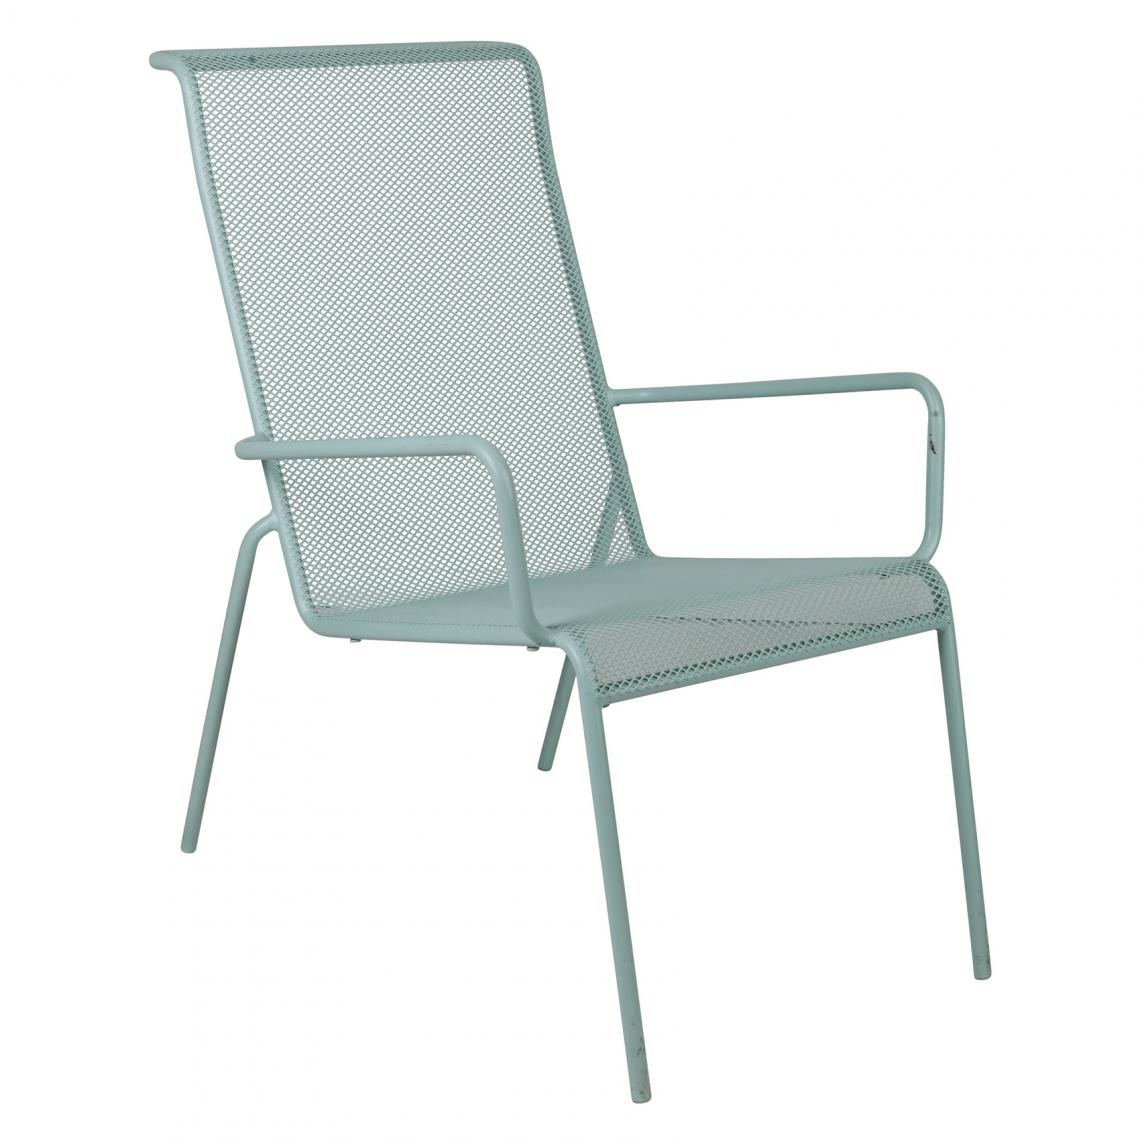 Alter - Chaise en métal, couleur verte, 57 x 75 x 90 cm - Chaises